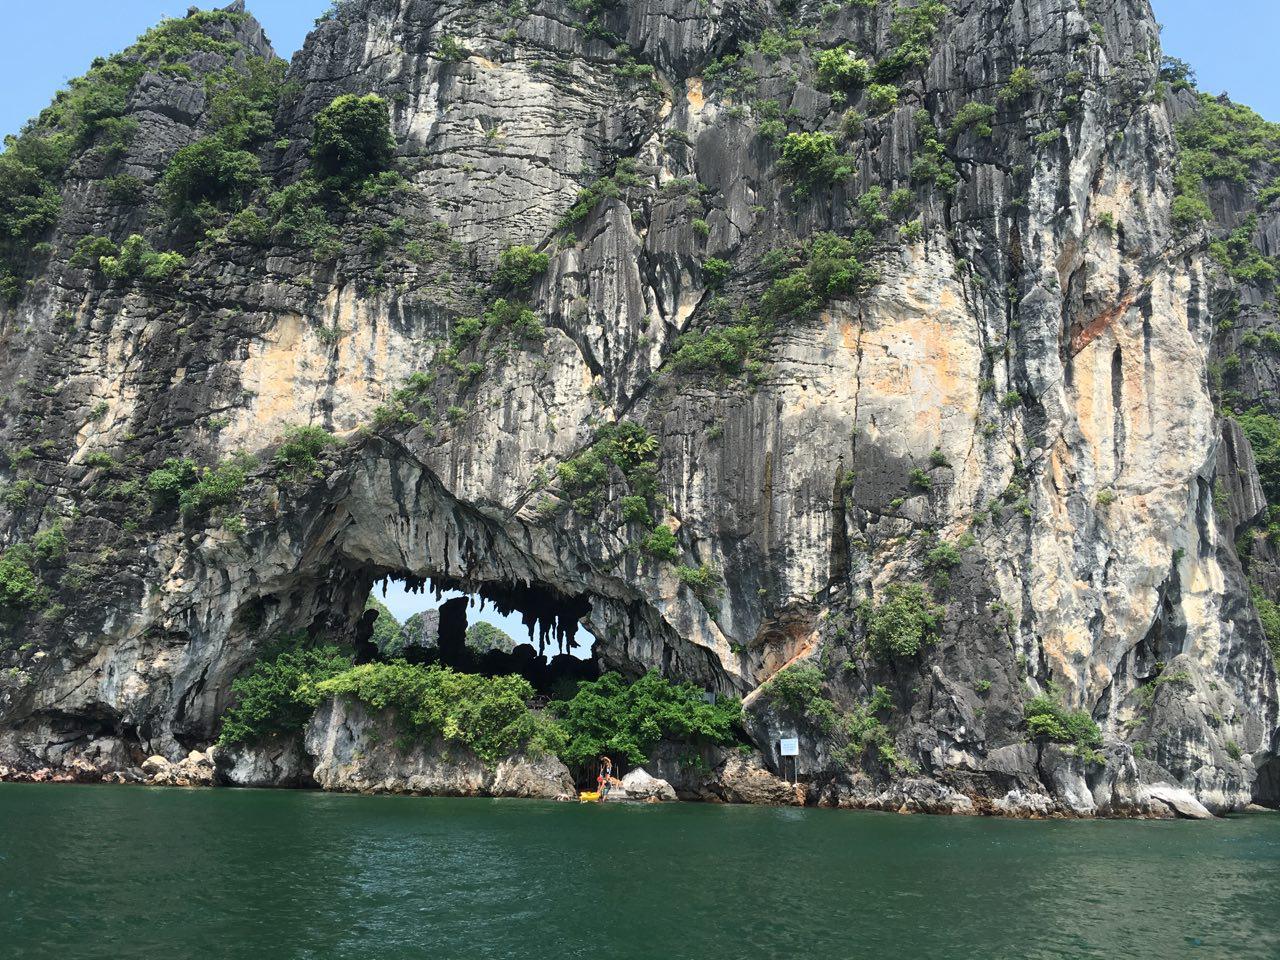 석회암 지대인 하롱베이의 섬들은 침식으로 인해 곳곳에 커다란 구멍이 난 곳이 많다. 저 구멍이 깊어지면 석회암 동굴이 만들어진다.